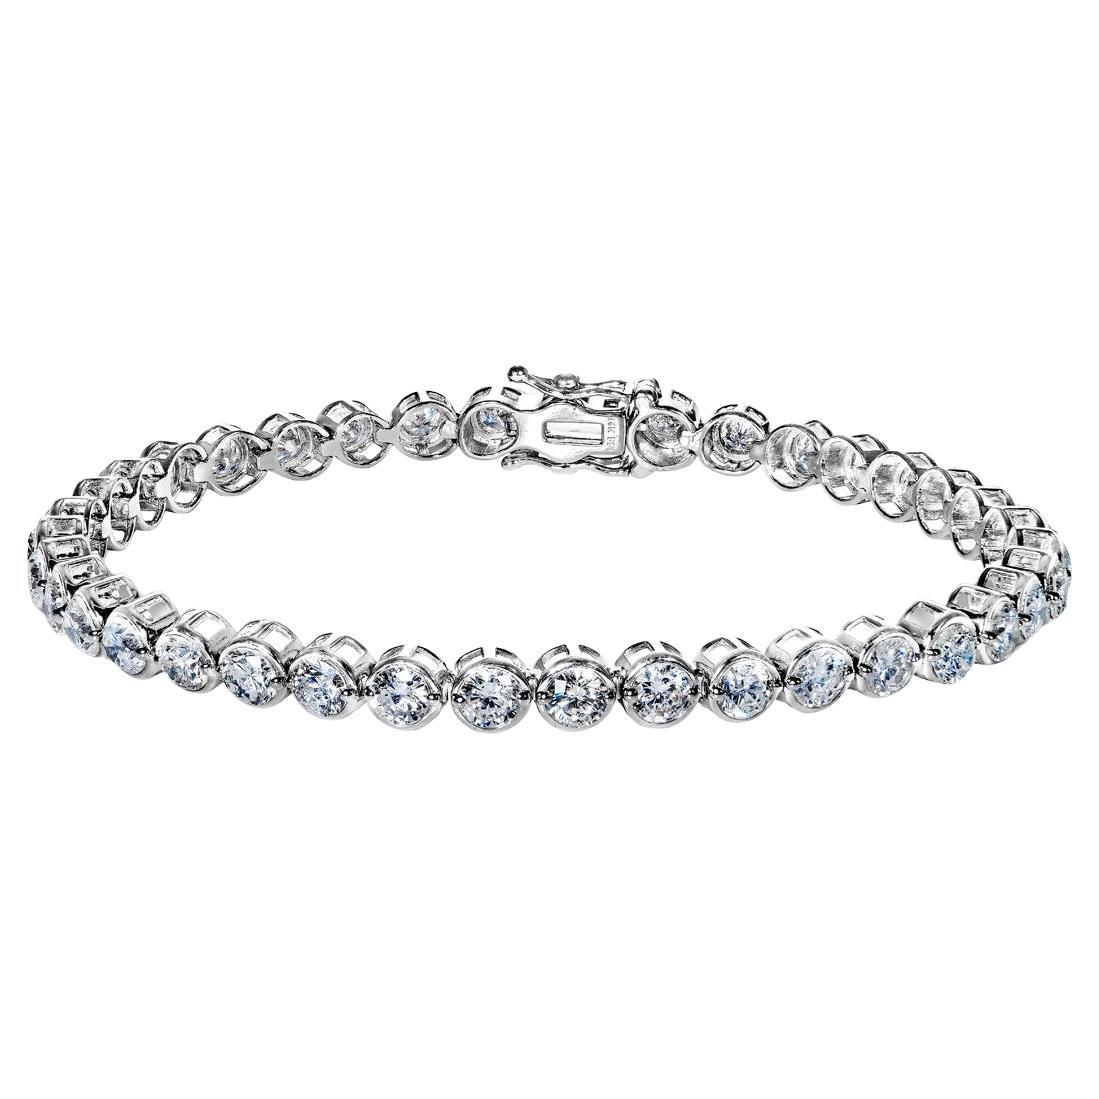 Bracelet tennis à rangée unique de diamants ronds et brillants de 7 carats certifiés